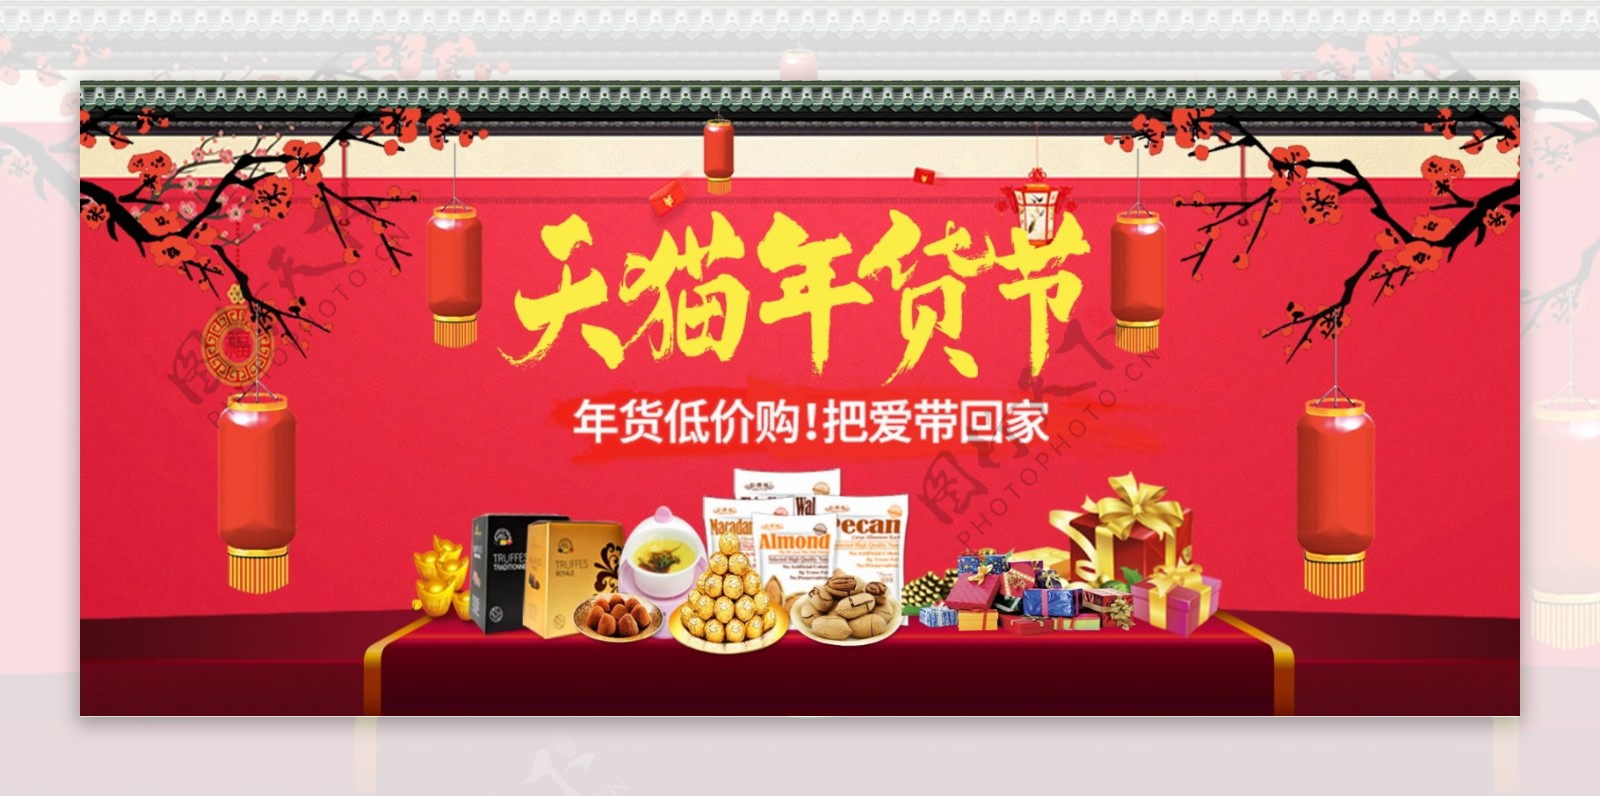 梅花灯笼中国风年货节促销海报模板